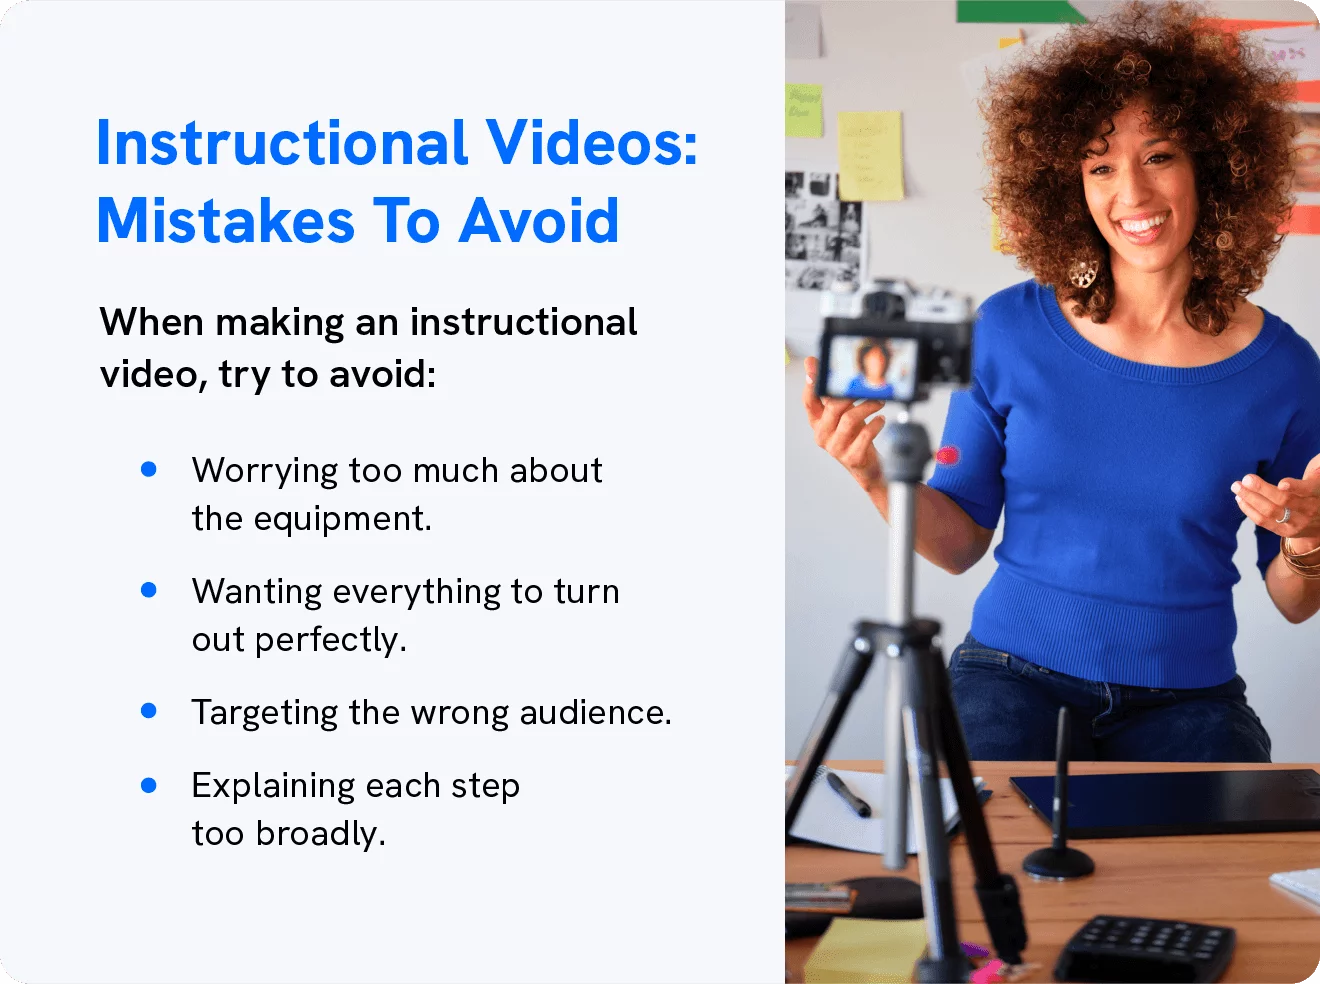 Un graphique montre les erreurs à éviter lors de la réalisation de vidéos pédagogiques.